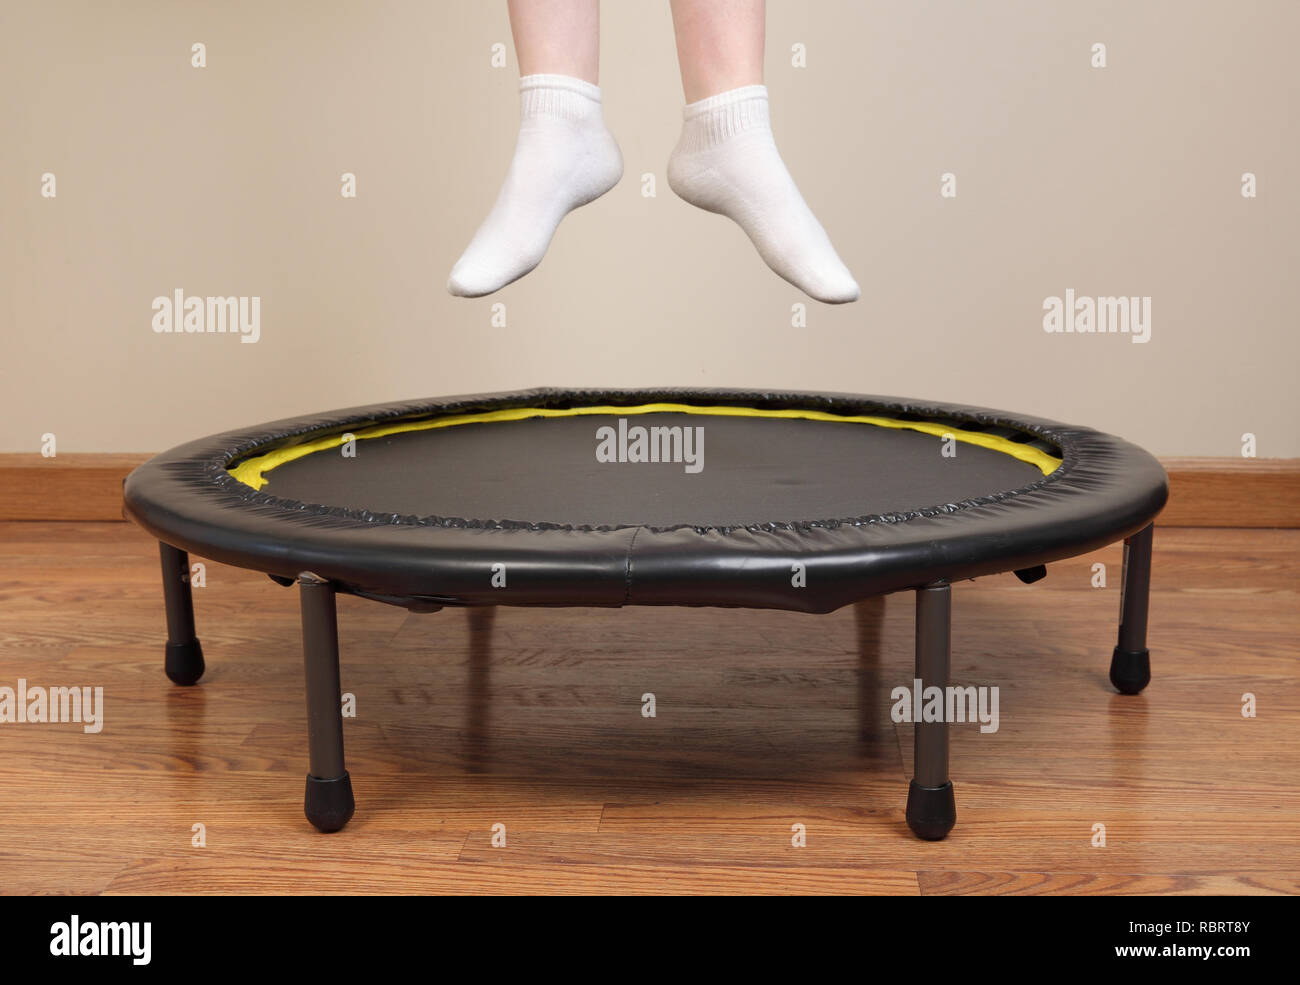 Donna di saltare sul trampolino di piccole dimensioni che mostra i piedi e le gambe inferiori solo Foto Stock